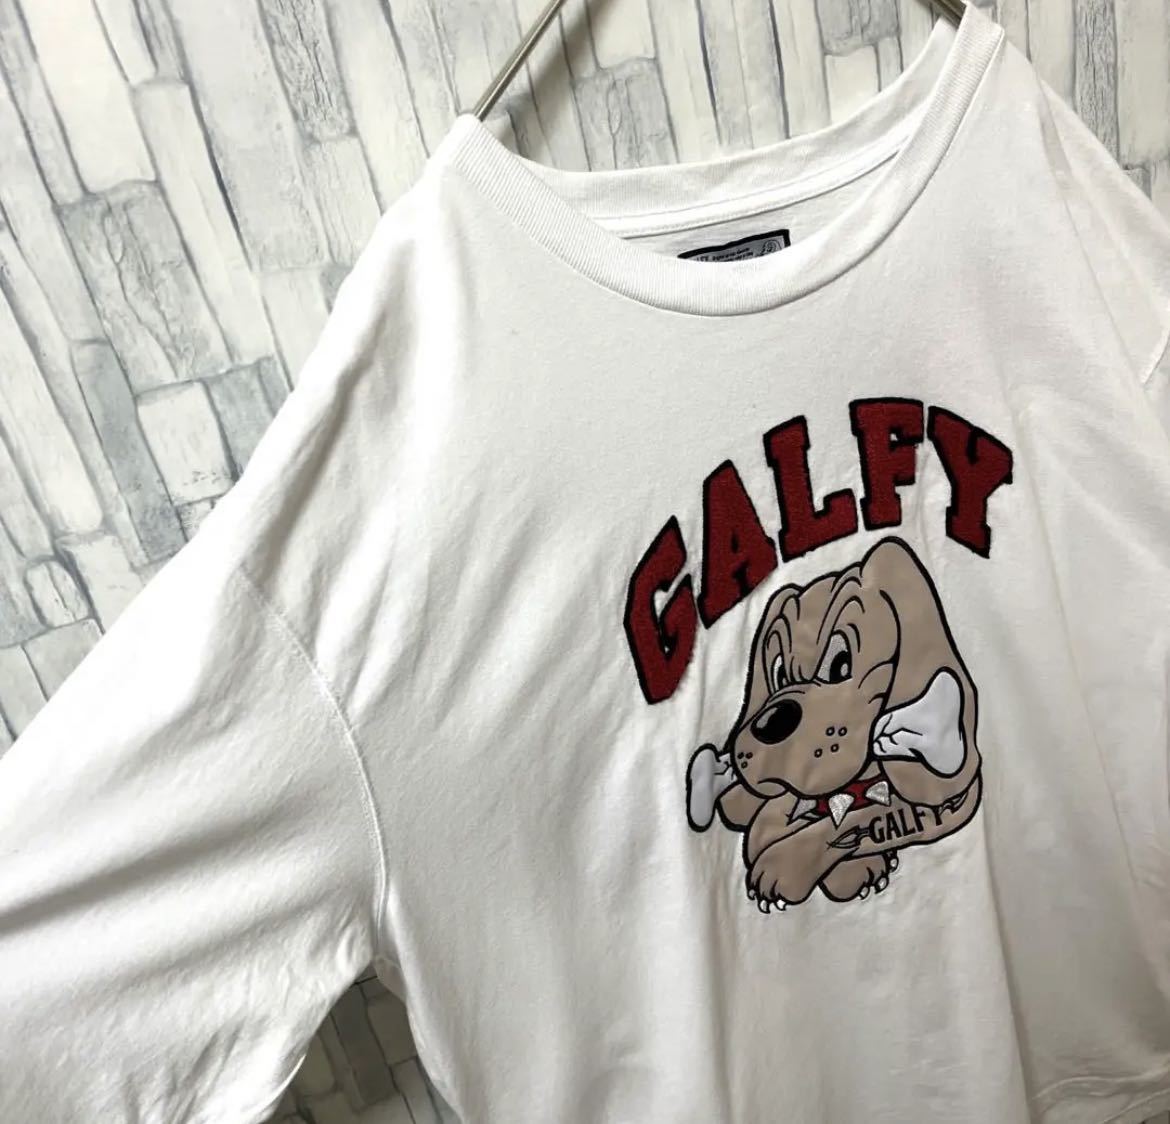 GALFY ガルフィー 半袖 Tシャツ サイズXL デカロゴ ビッグロゴ 刺繍ロゴ ワッペン ホワイト 送料無料